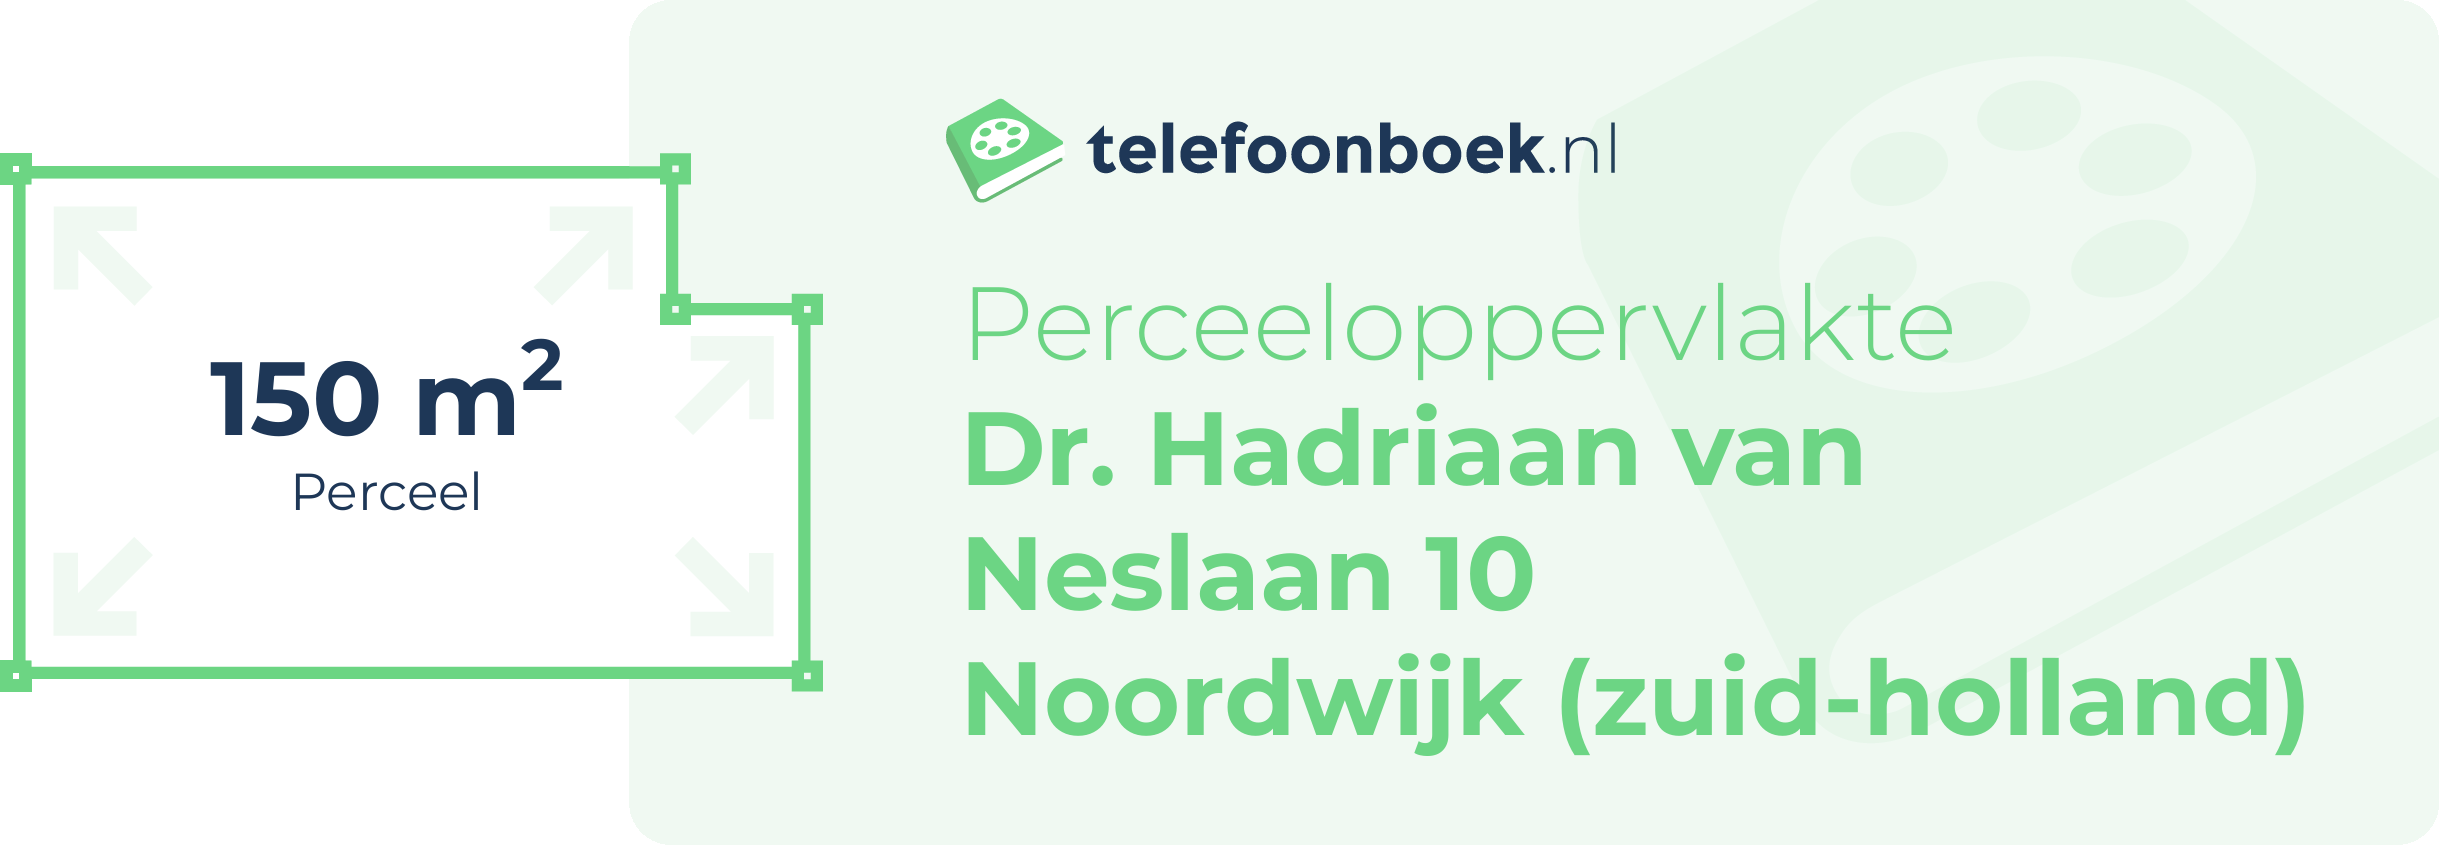 Perceeloppervlakte Dr. Hadriaan Van Neslaan 10 Noordwijk (Zuid-Holland)